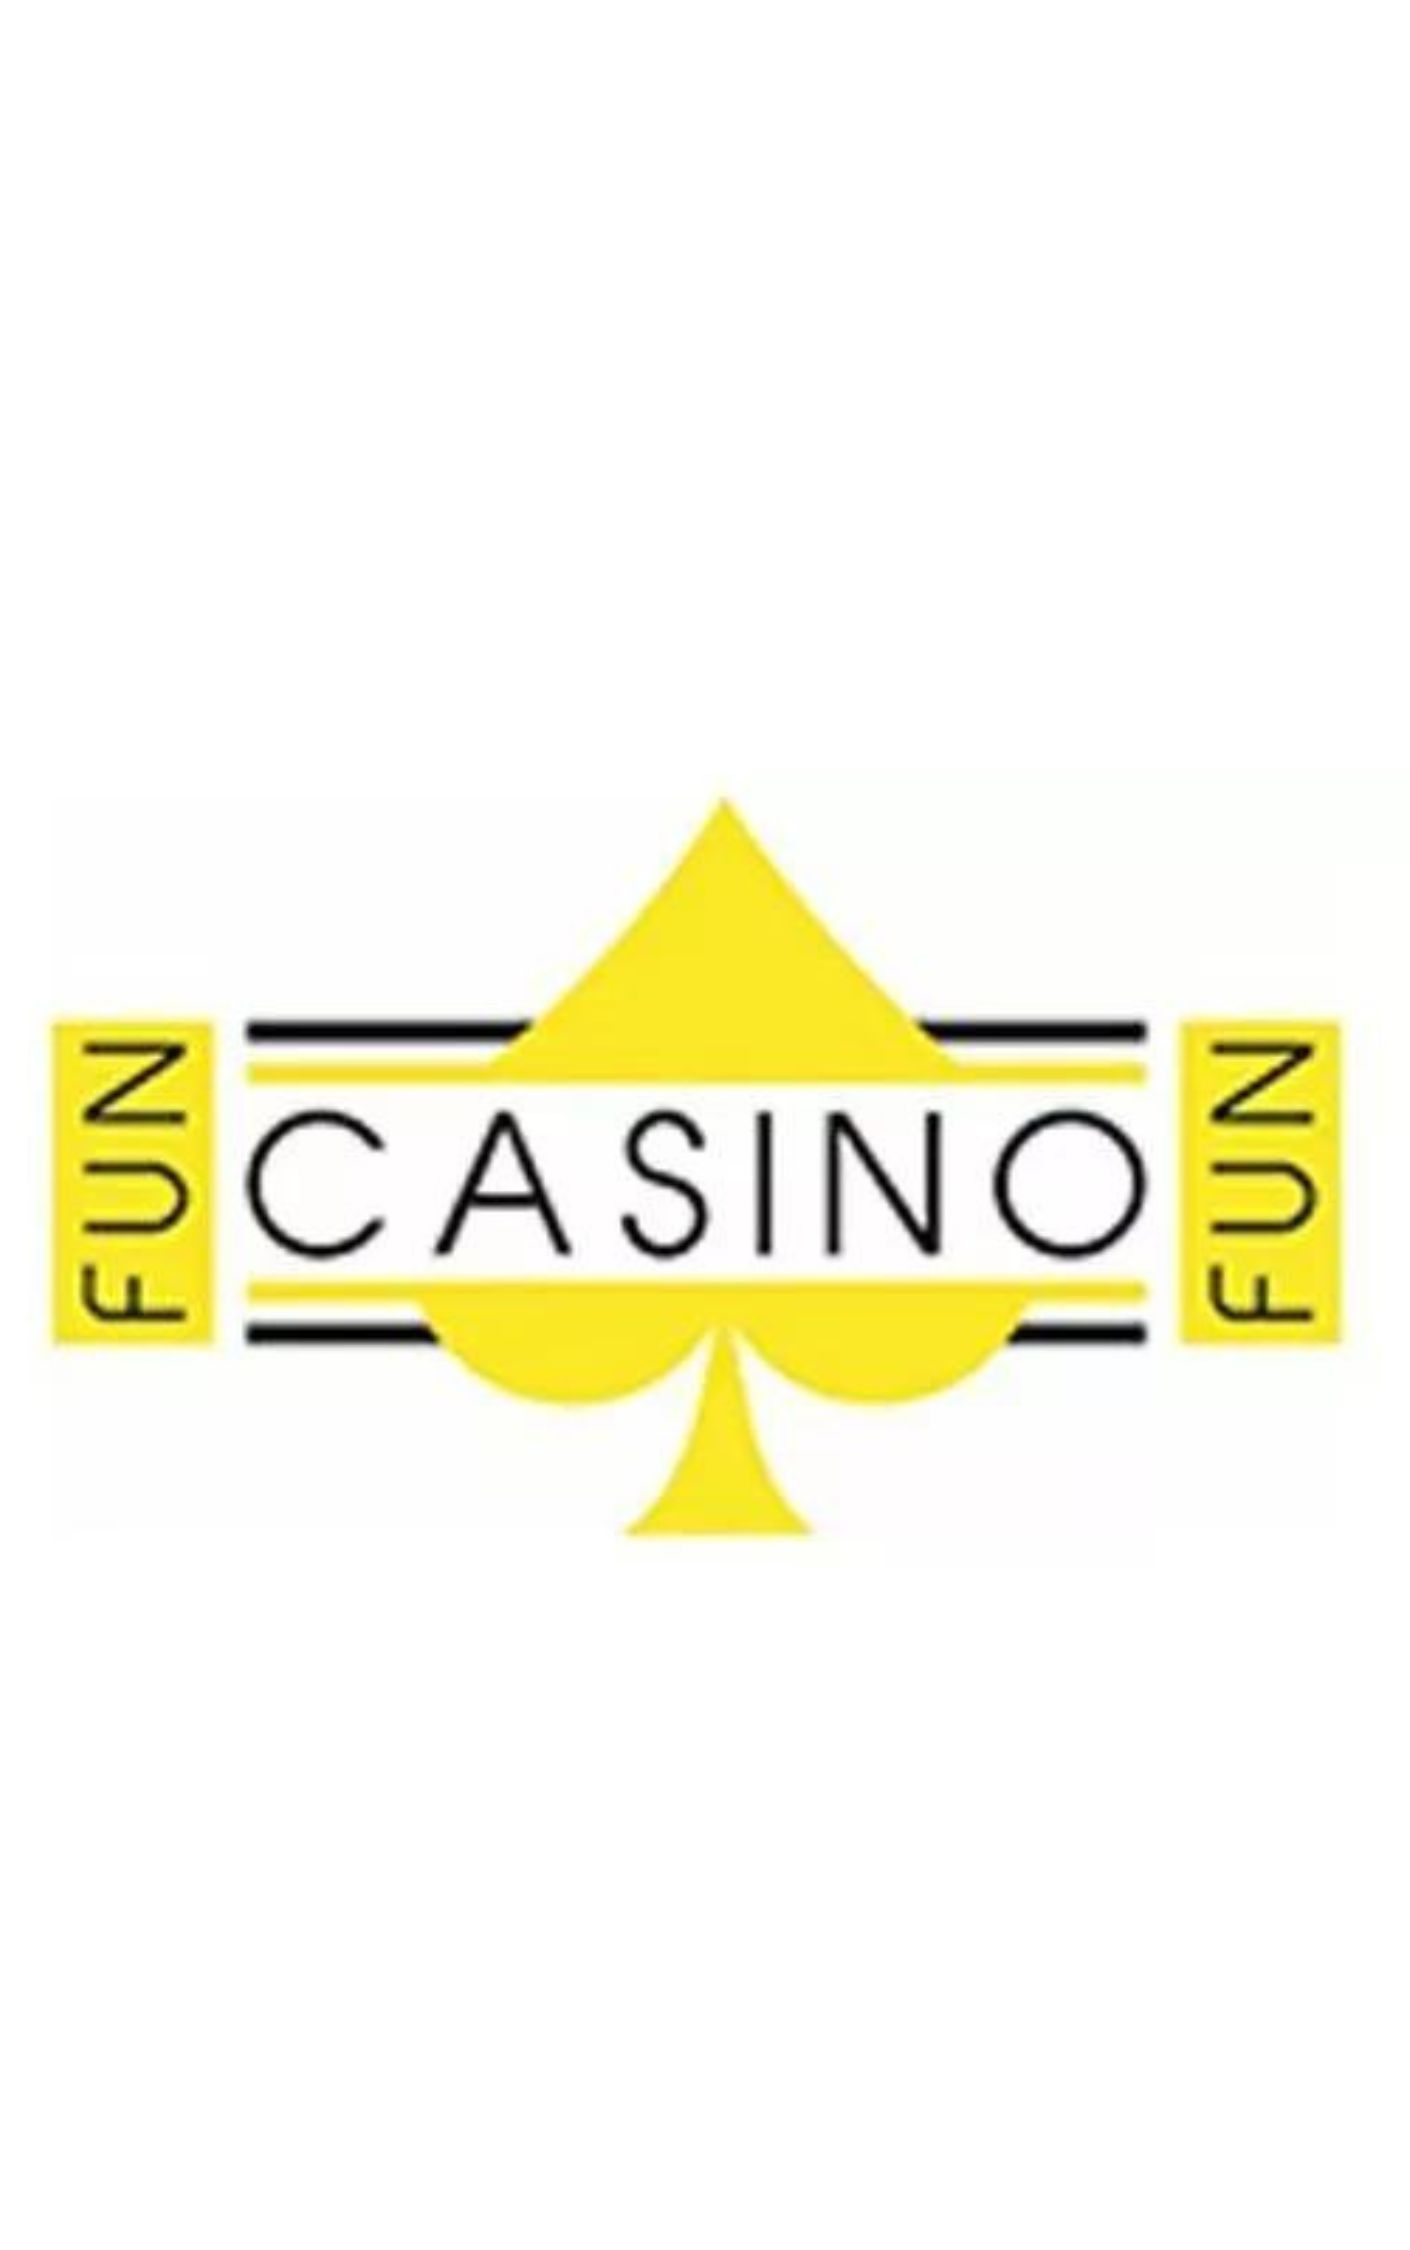 Fun Casino Fun